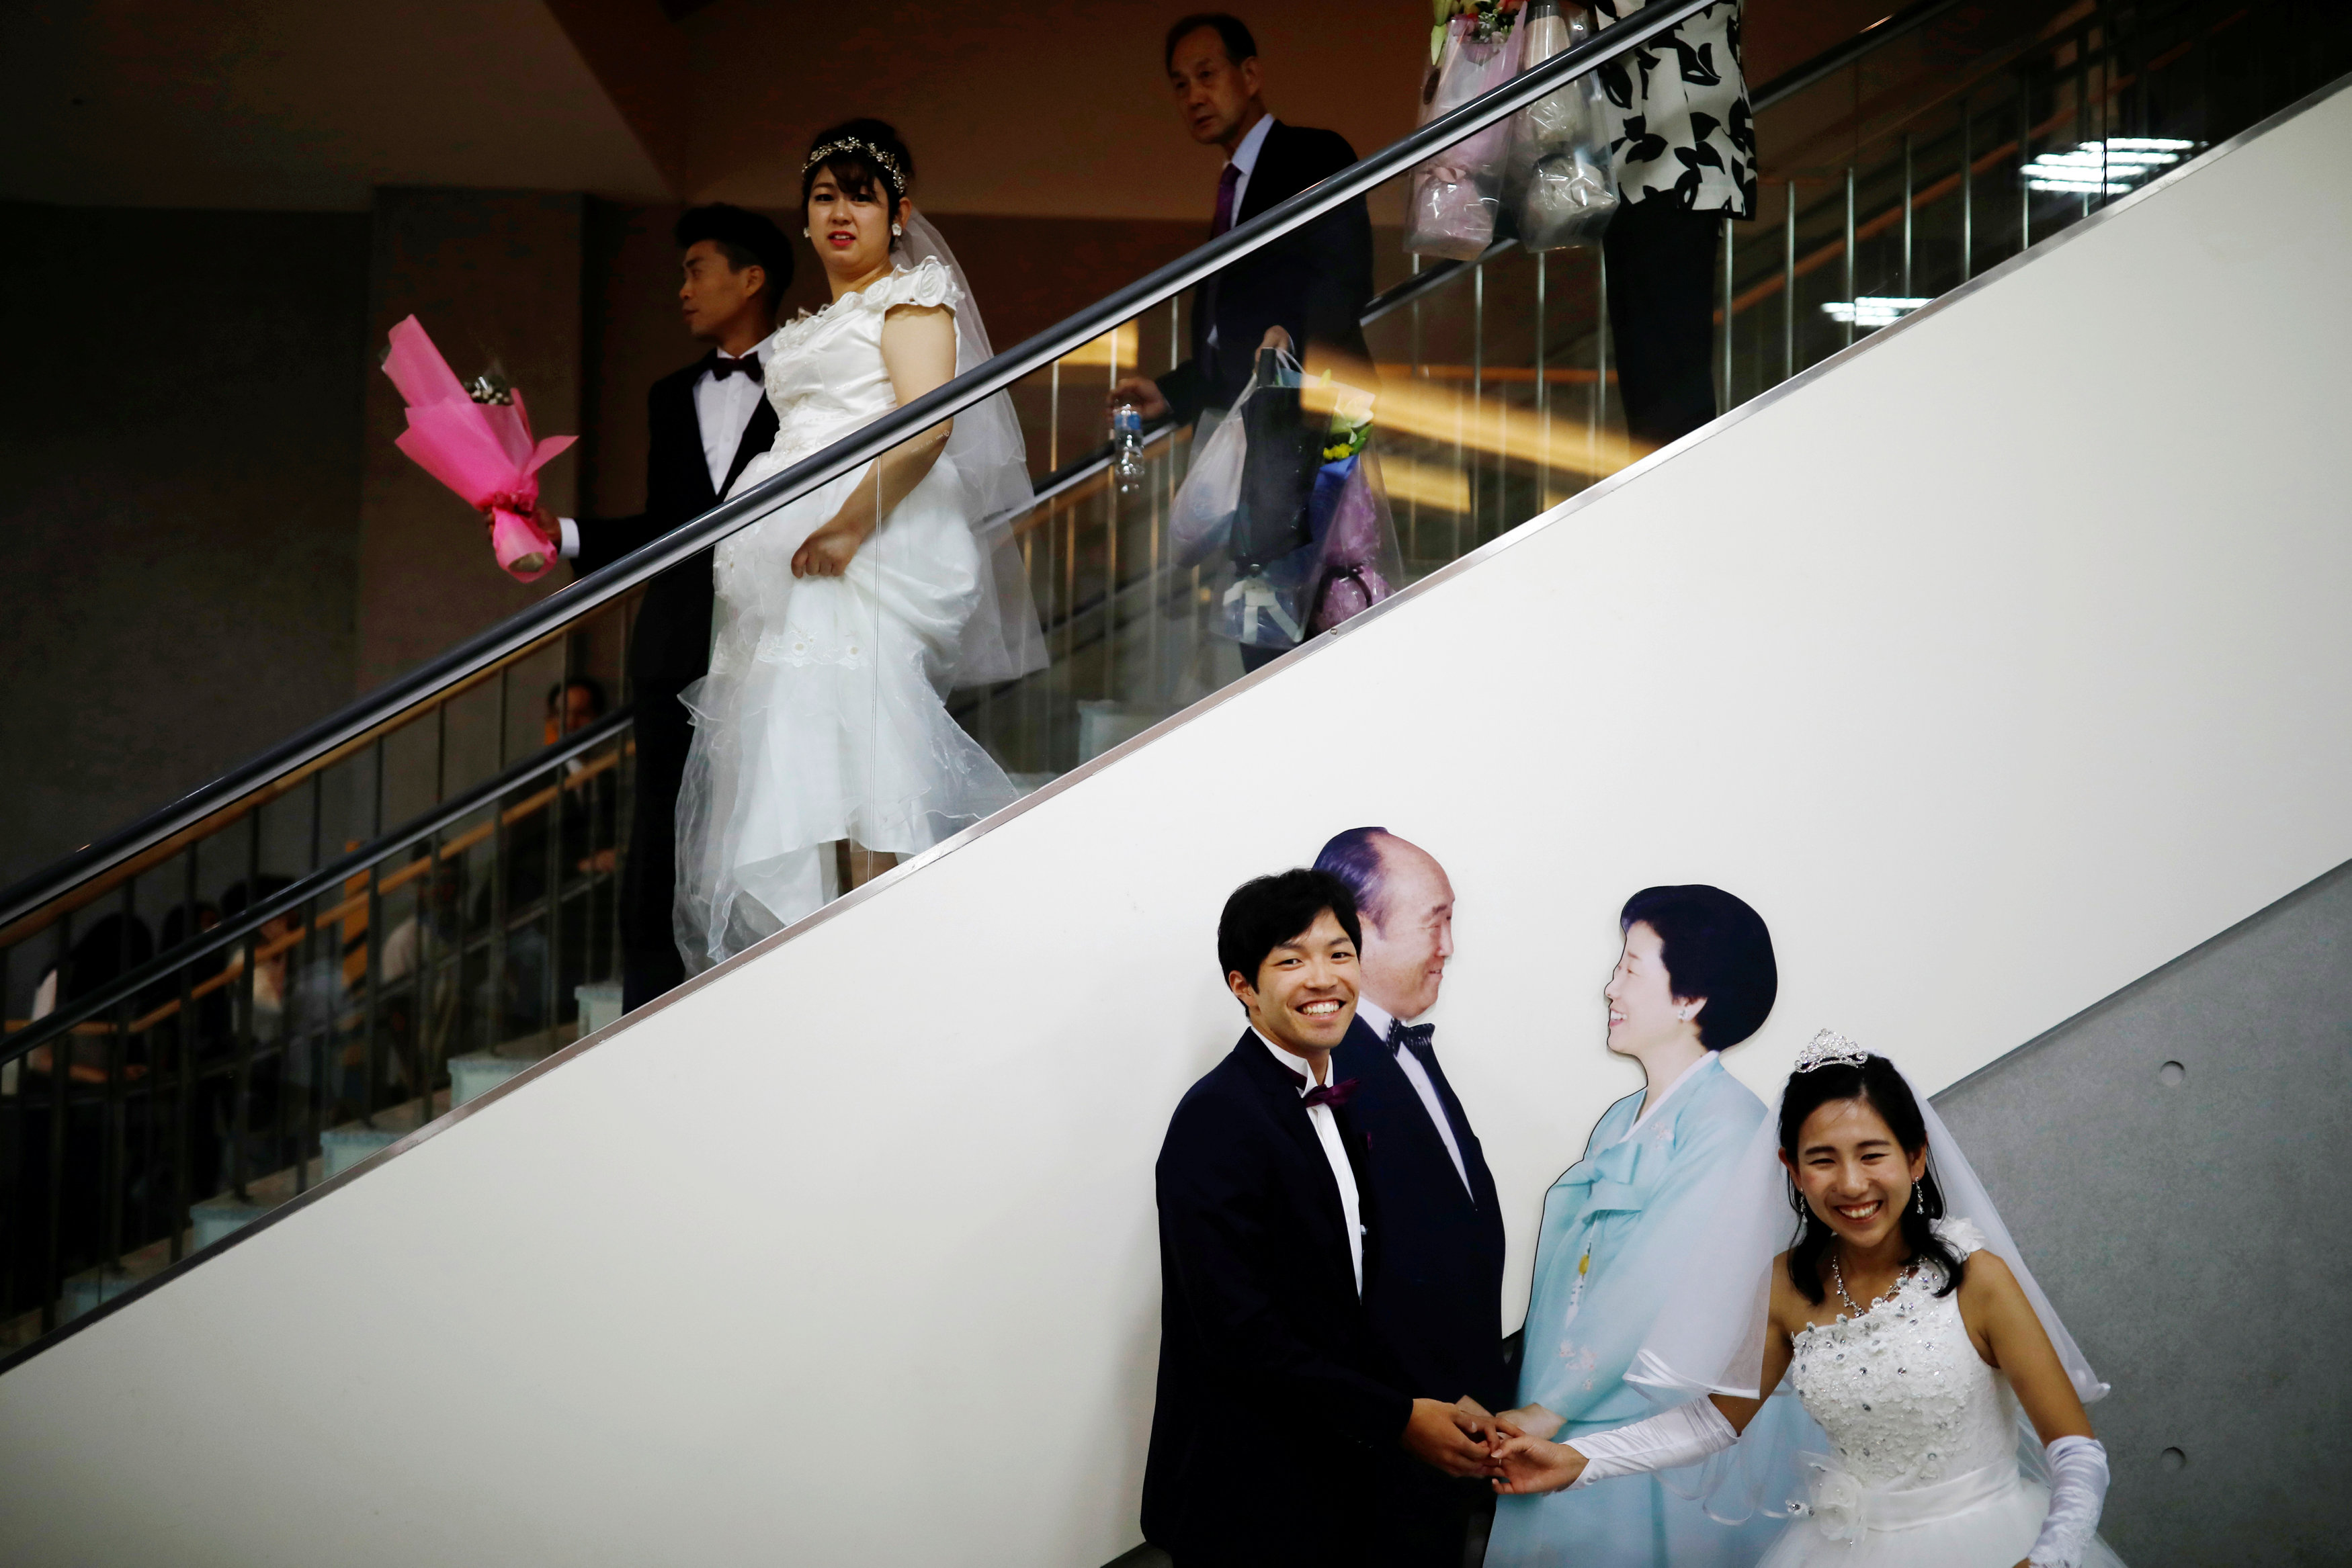 حفل زفاف جماعى فى كوريا الجنوبية